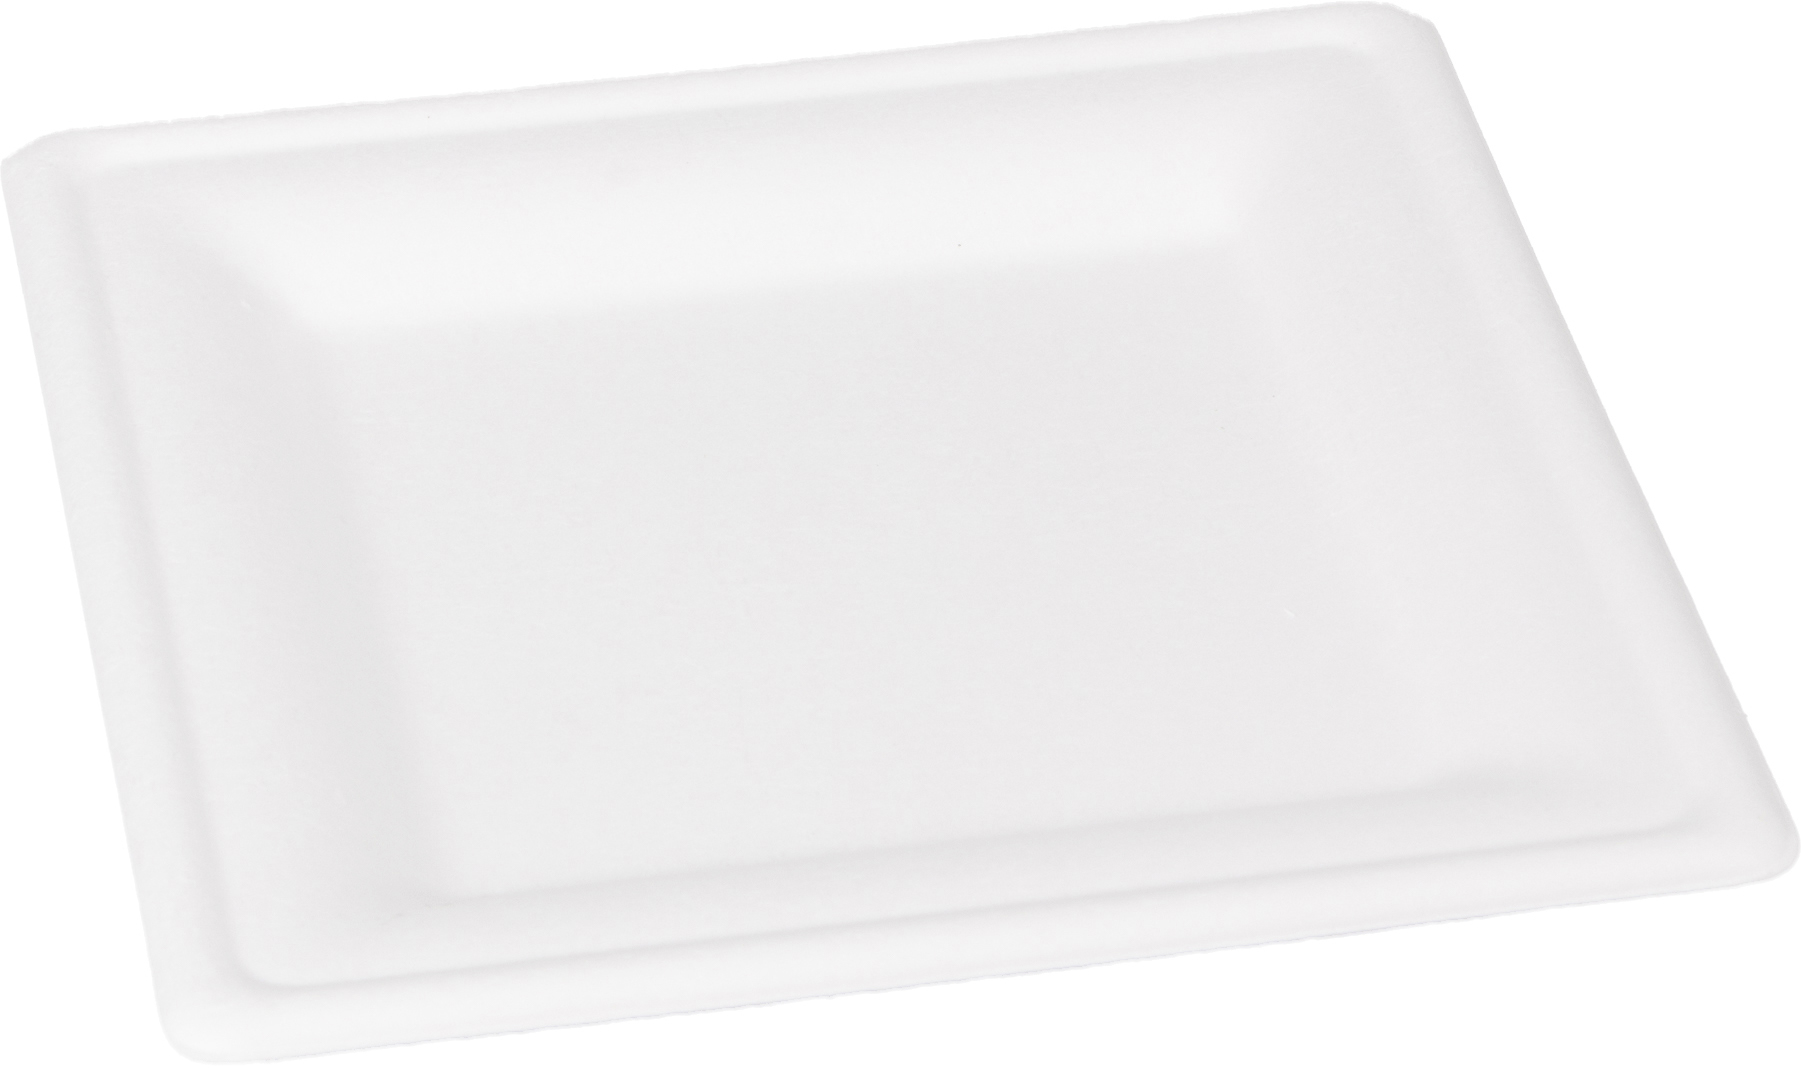 ELCO Assiette en bagasse 26x26cm 10230020-016 blanc, 10pcs.